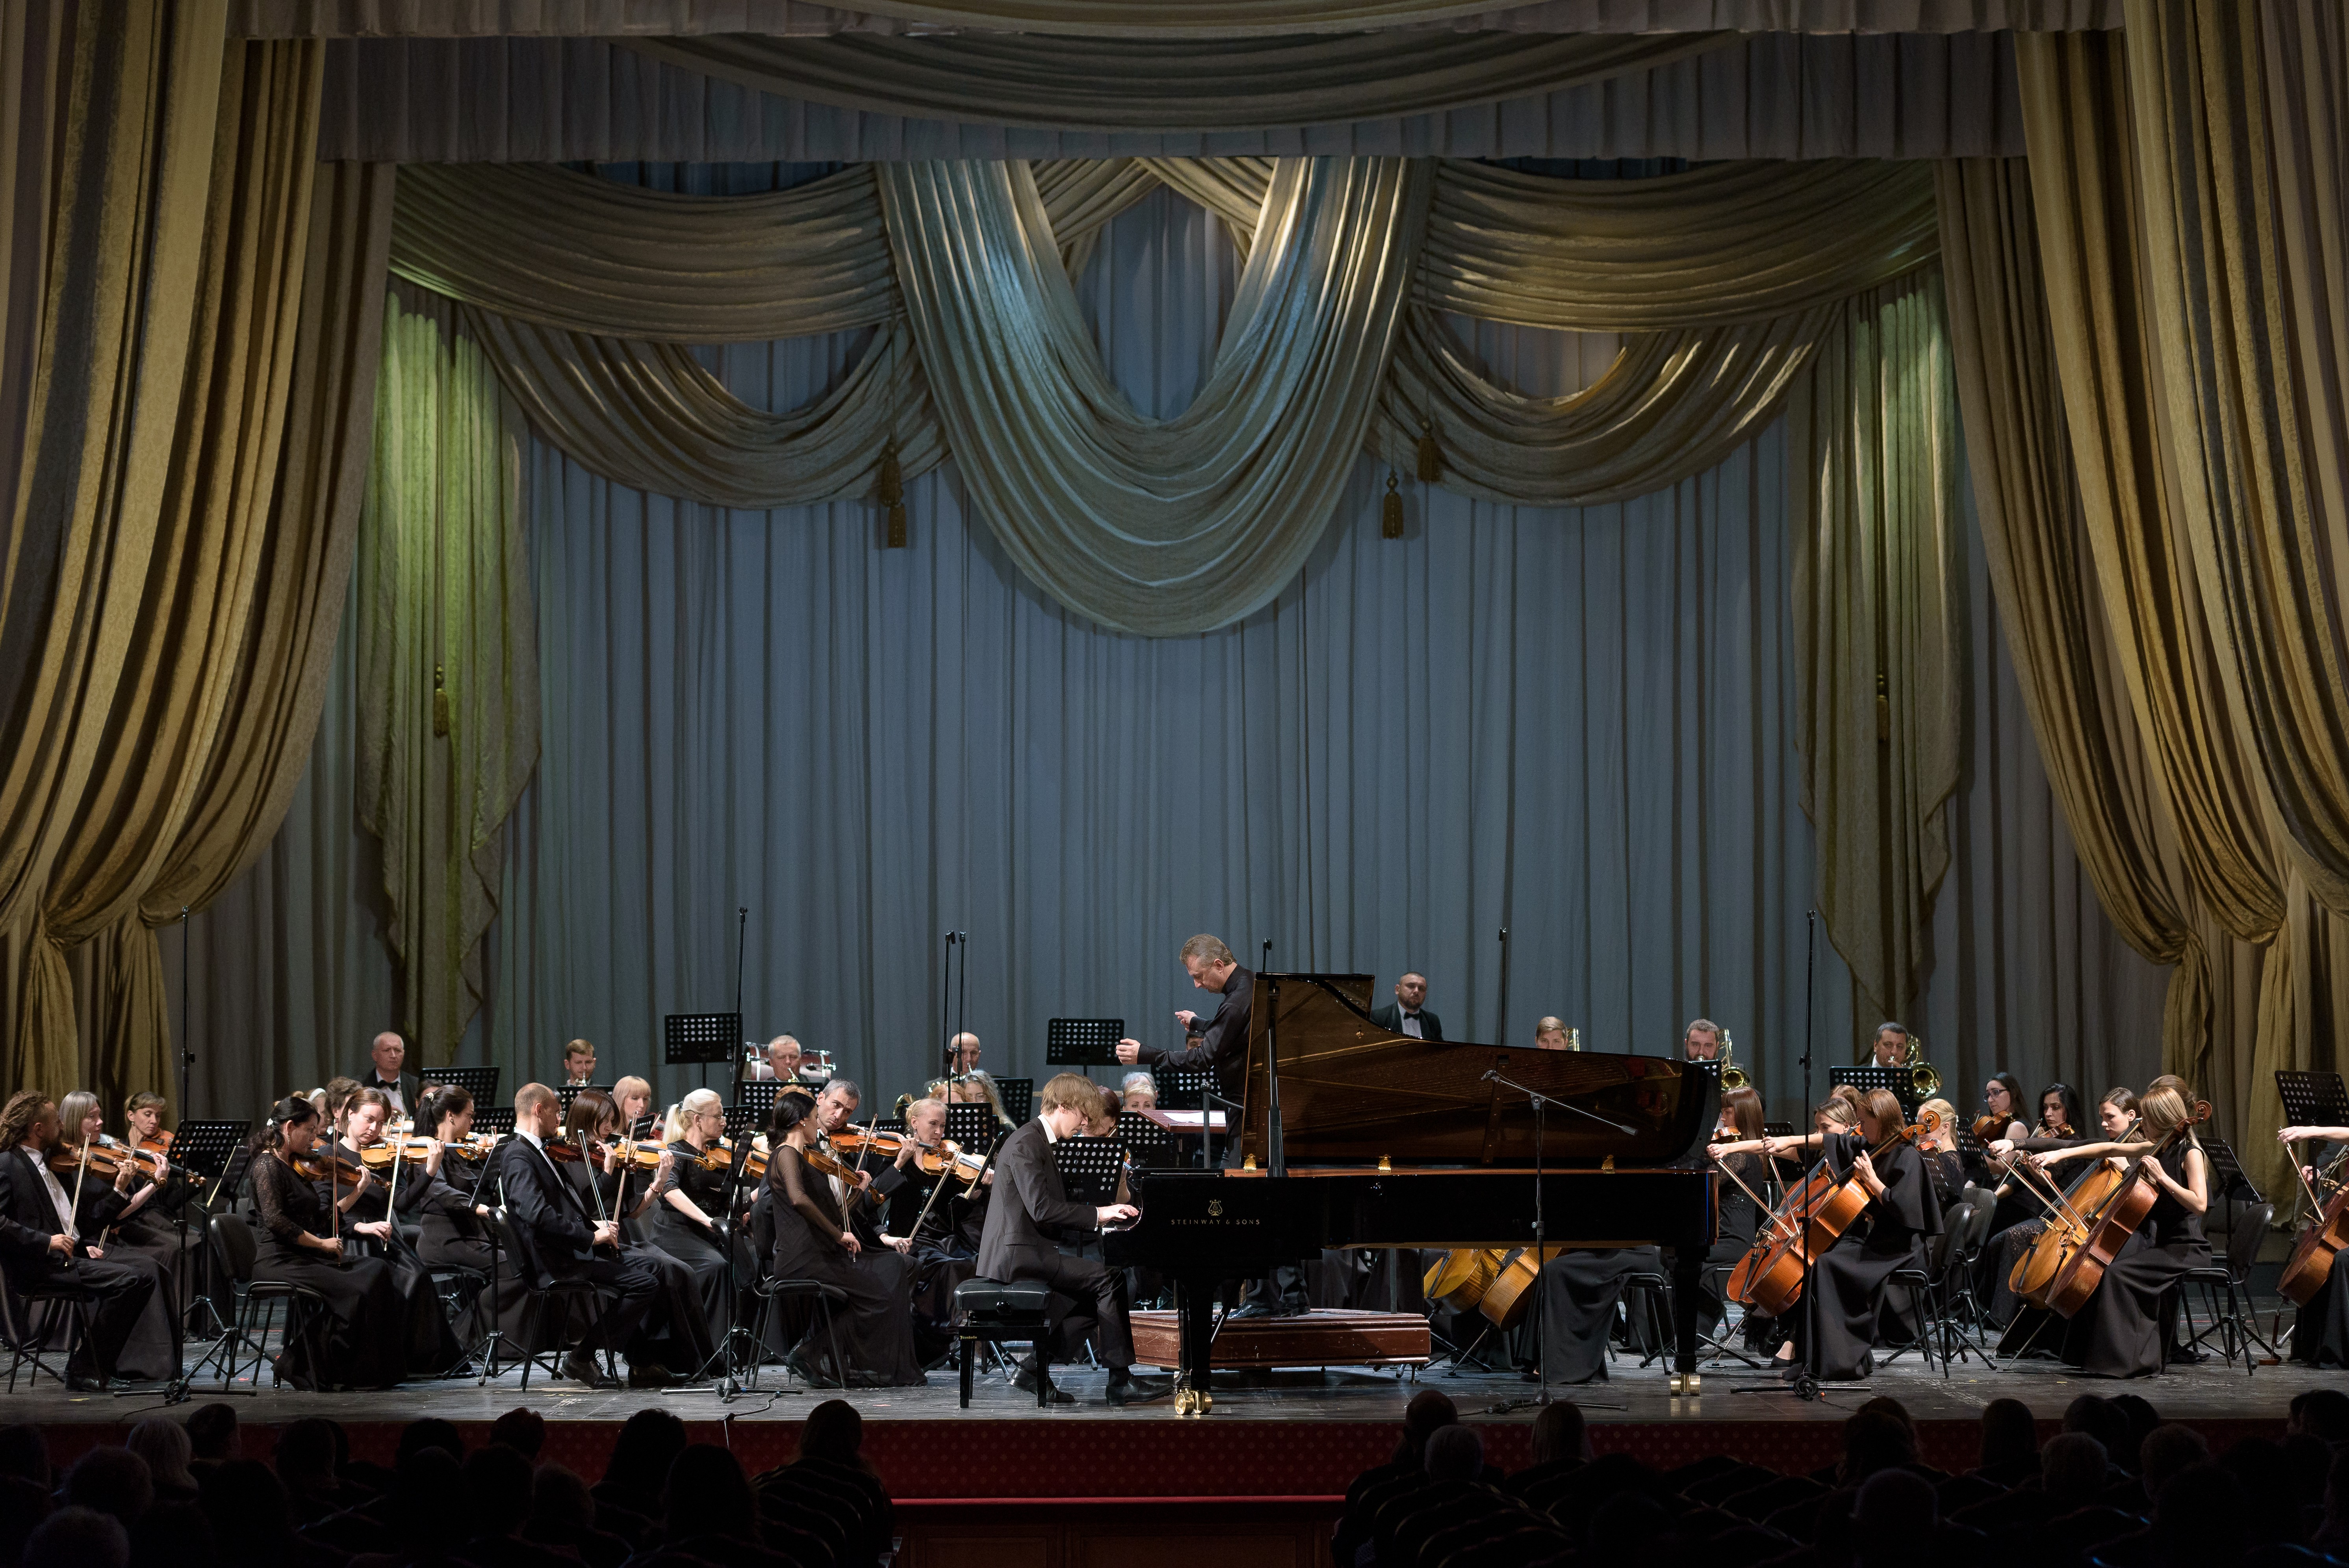 Астраханский государственный театр оперы и балета начинает сотрудничество по социокультурному проекту